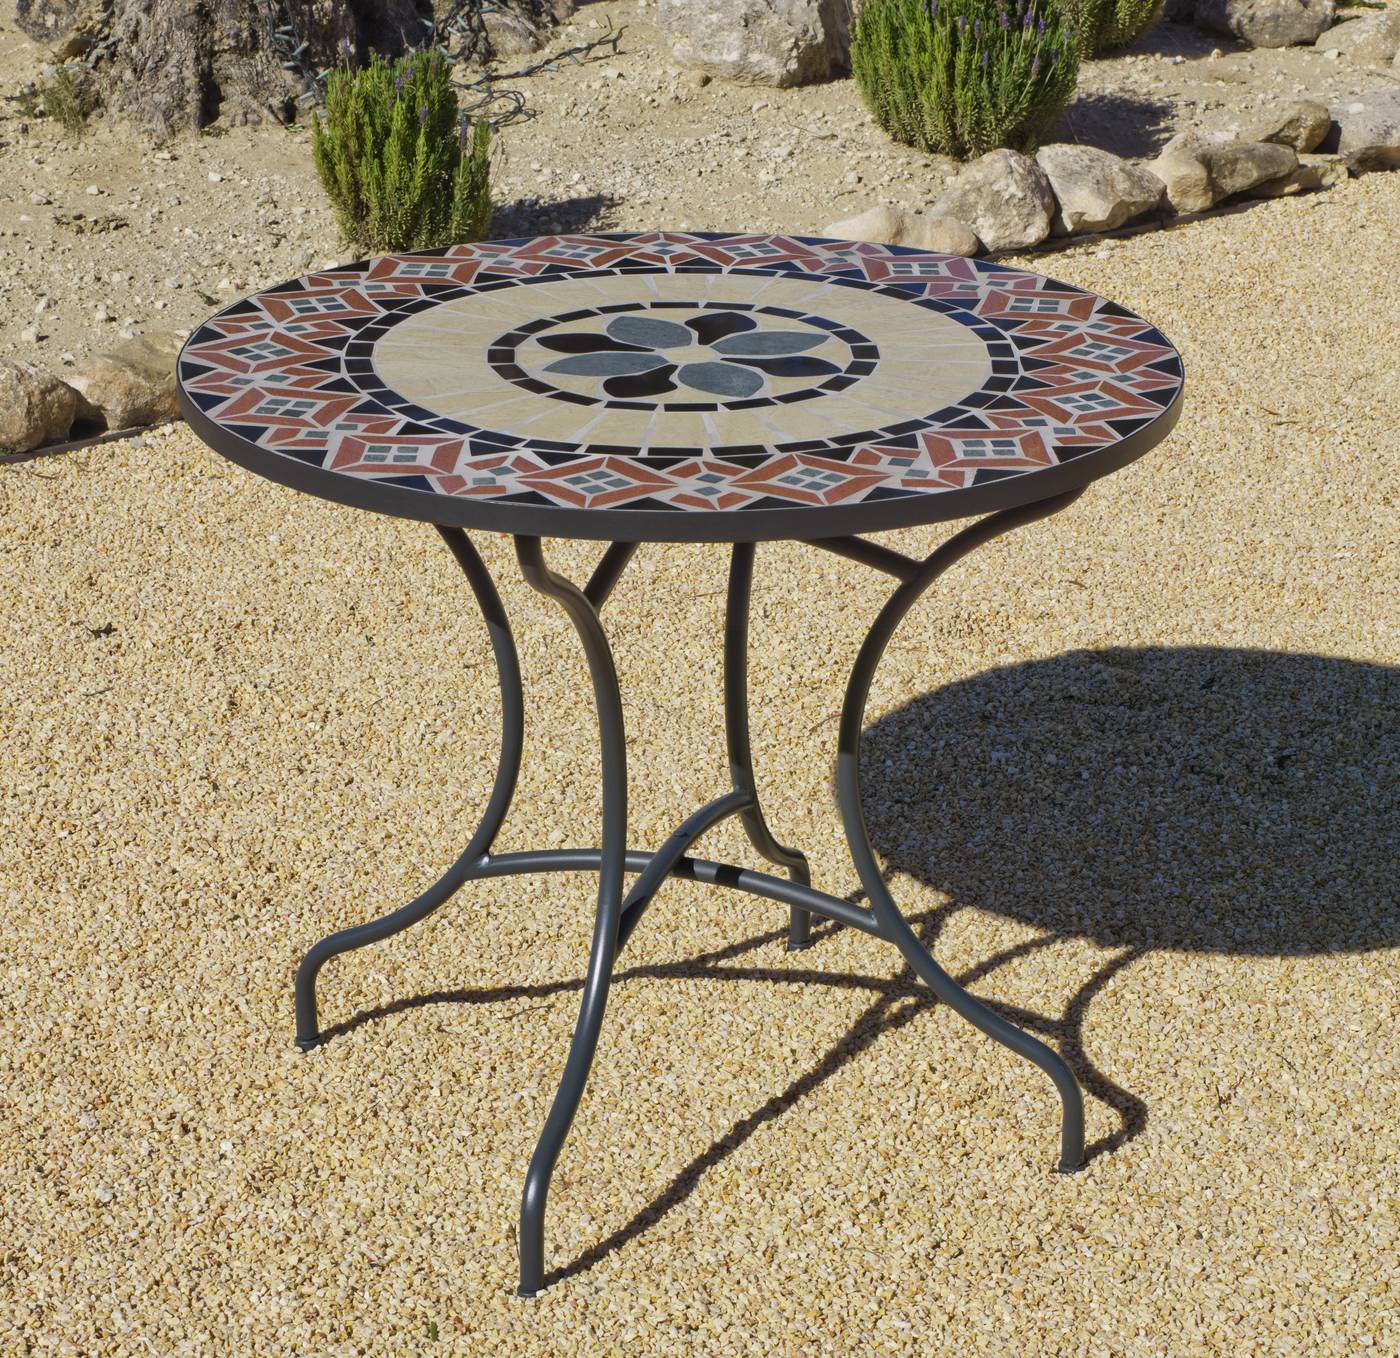 Set Mosaico Camel-Ampurias 90-4 - Conjunto para jardín color gris antracita: 1 mesa redonda 90 cm. de forja con panel mosaico + 4 sillones de ratán sintético